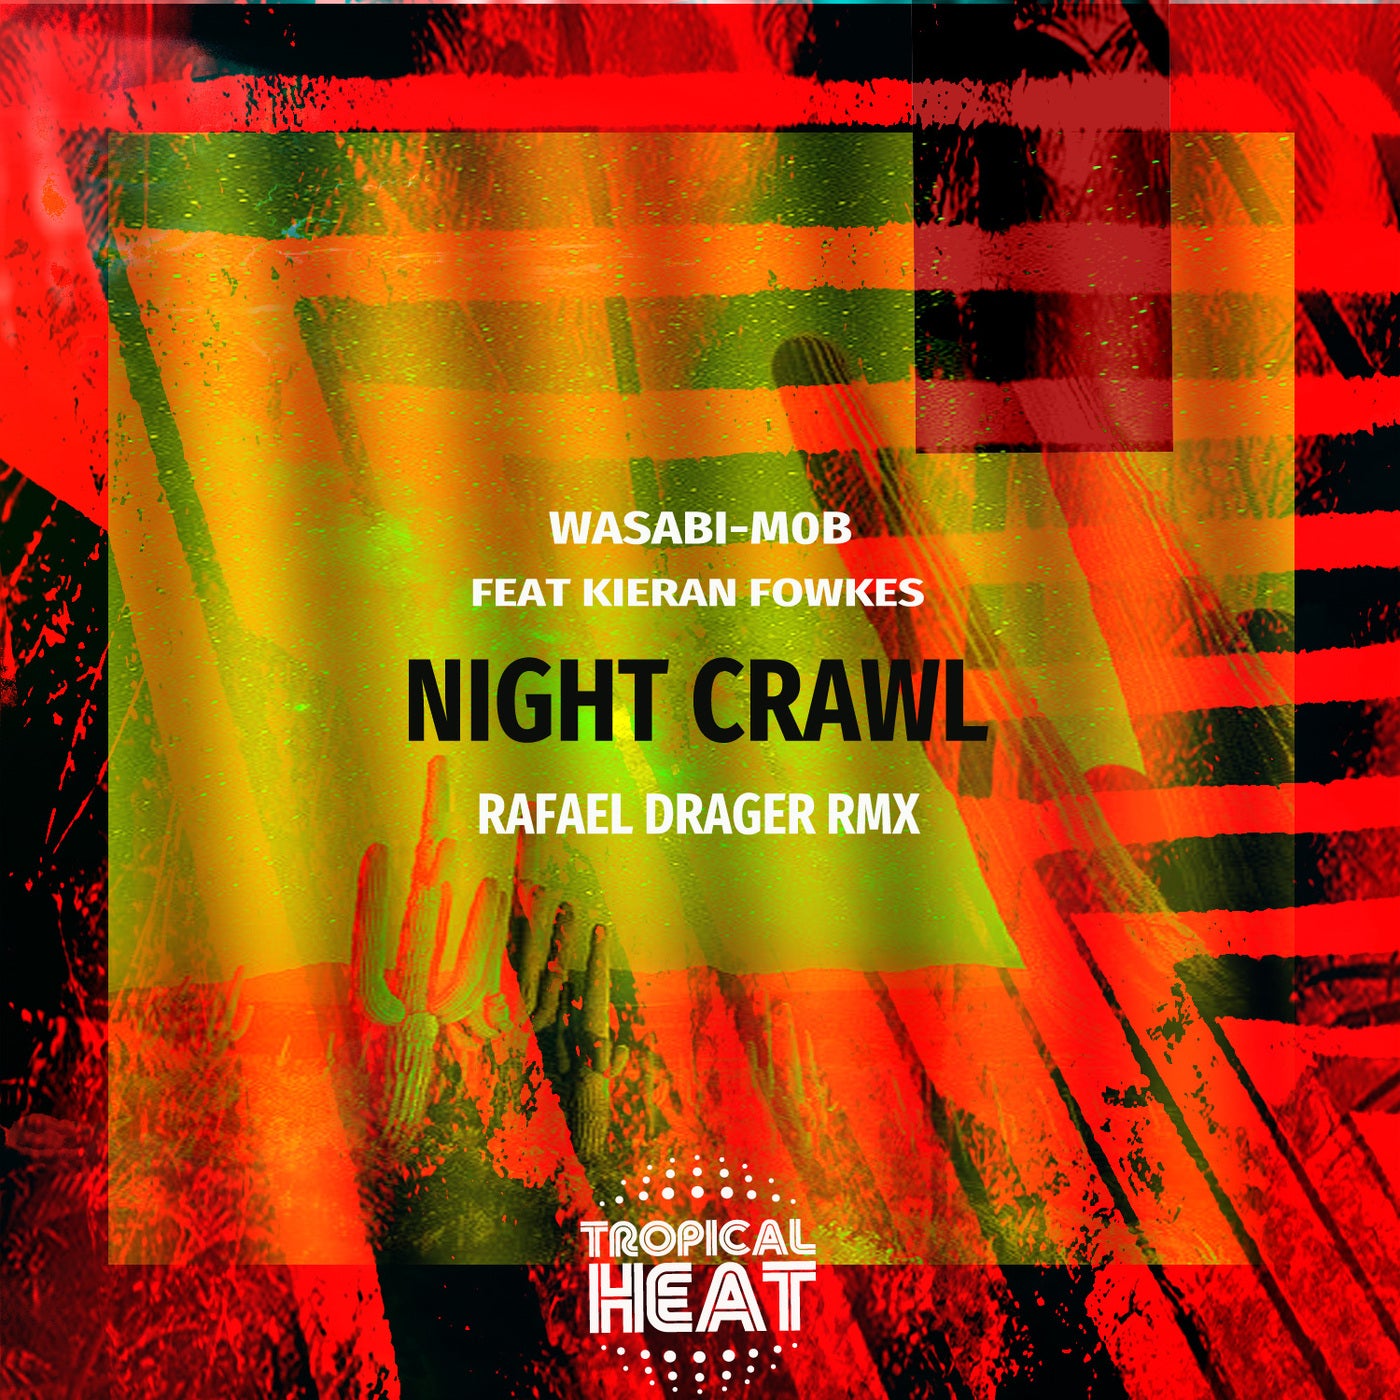 Night Crawl (Rafael Drager Rmx)